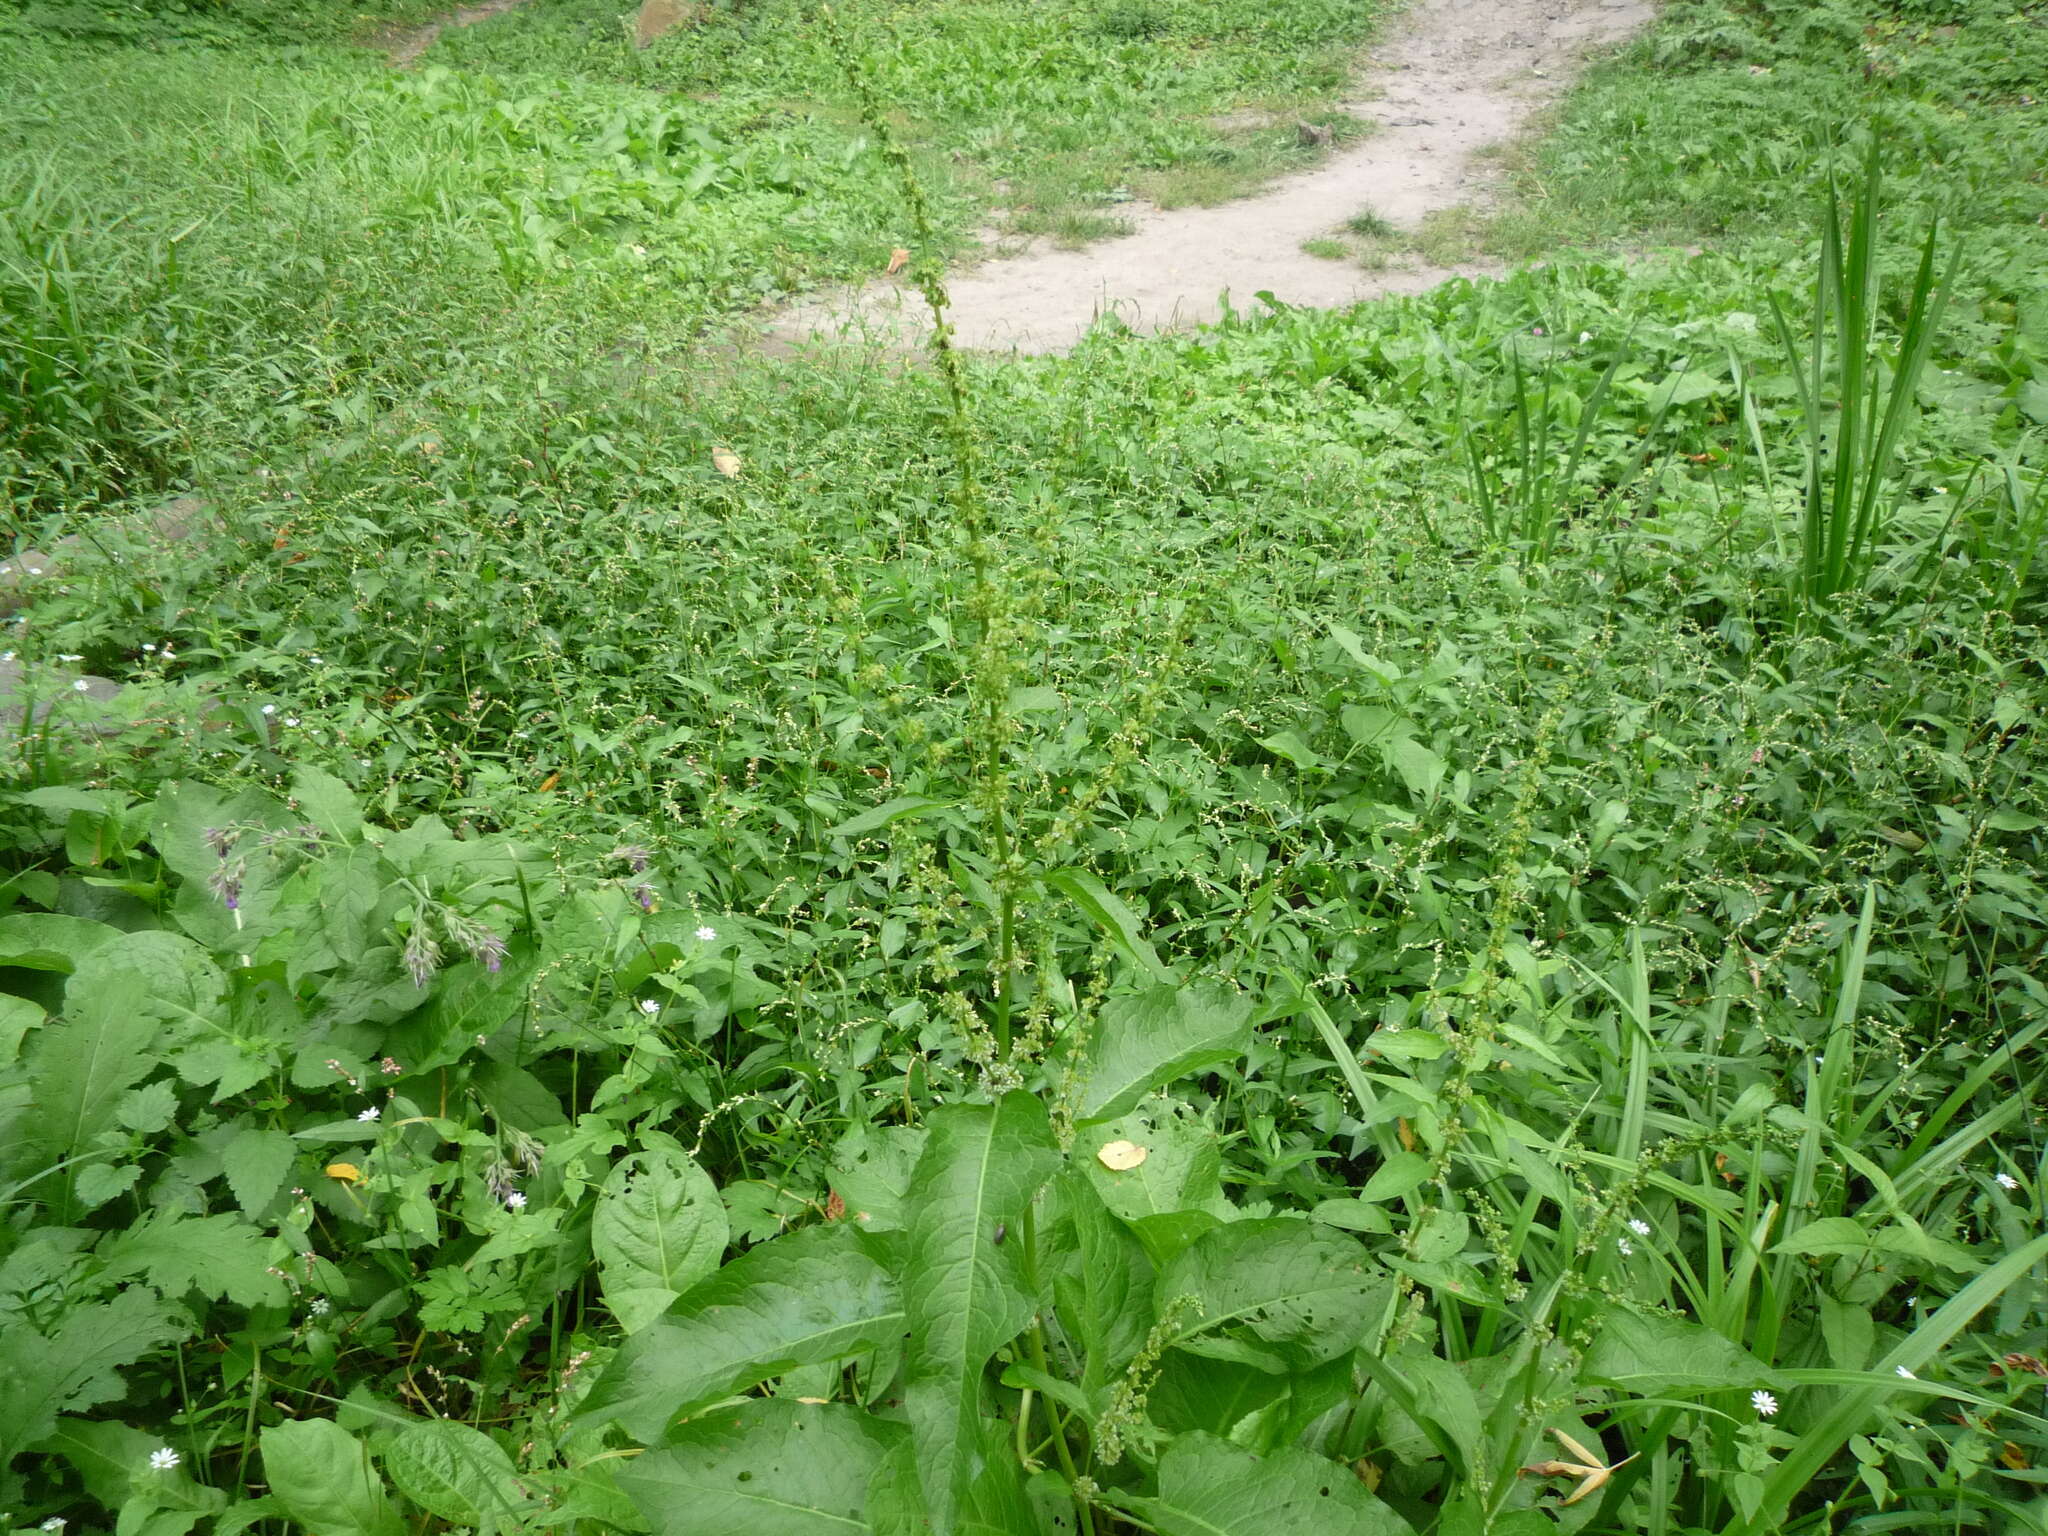 Image of Rumex obtusifolius subsp. sylvestris (Lam.) Celak.